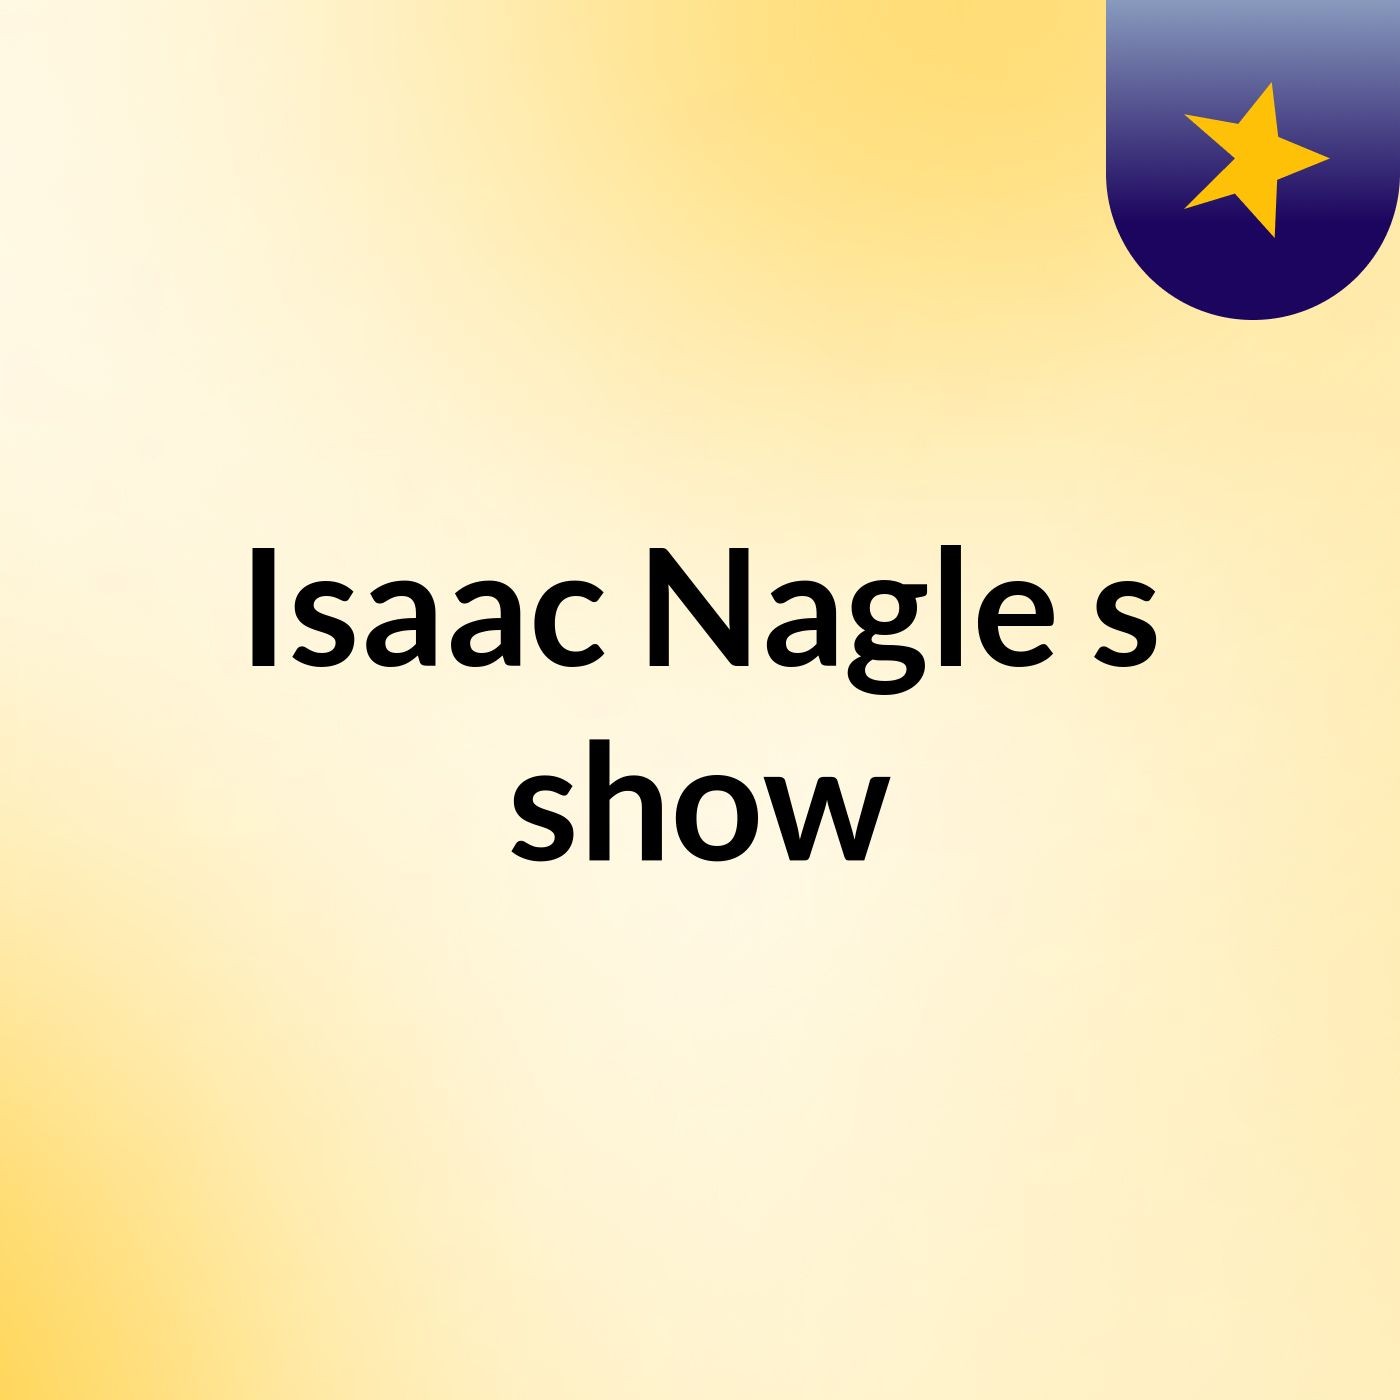 Isaac Nagle's show